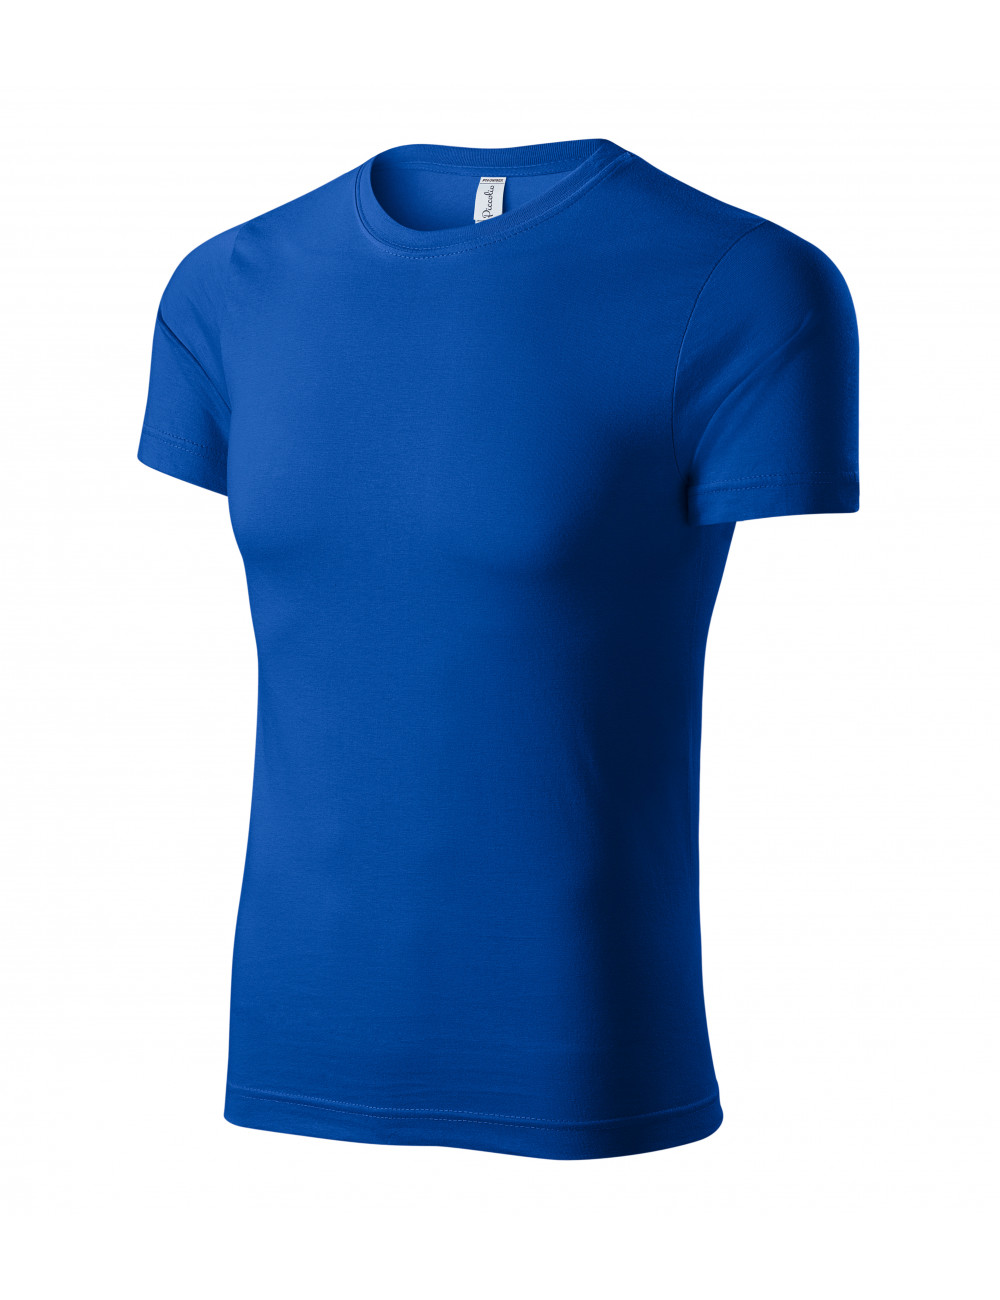 Unisex t-shirt peak p74 cornflower blue Adler Piccolio